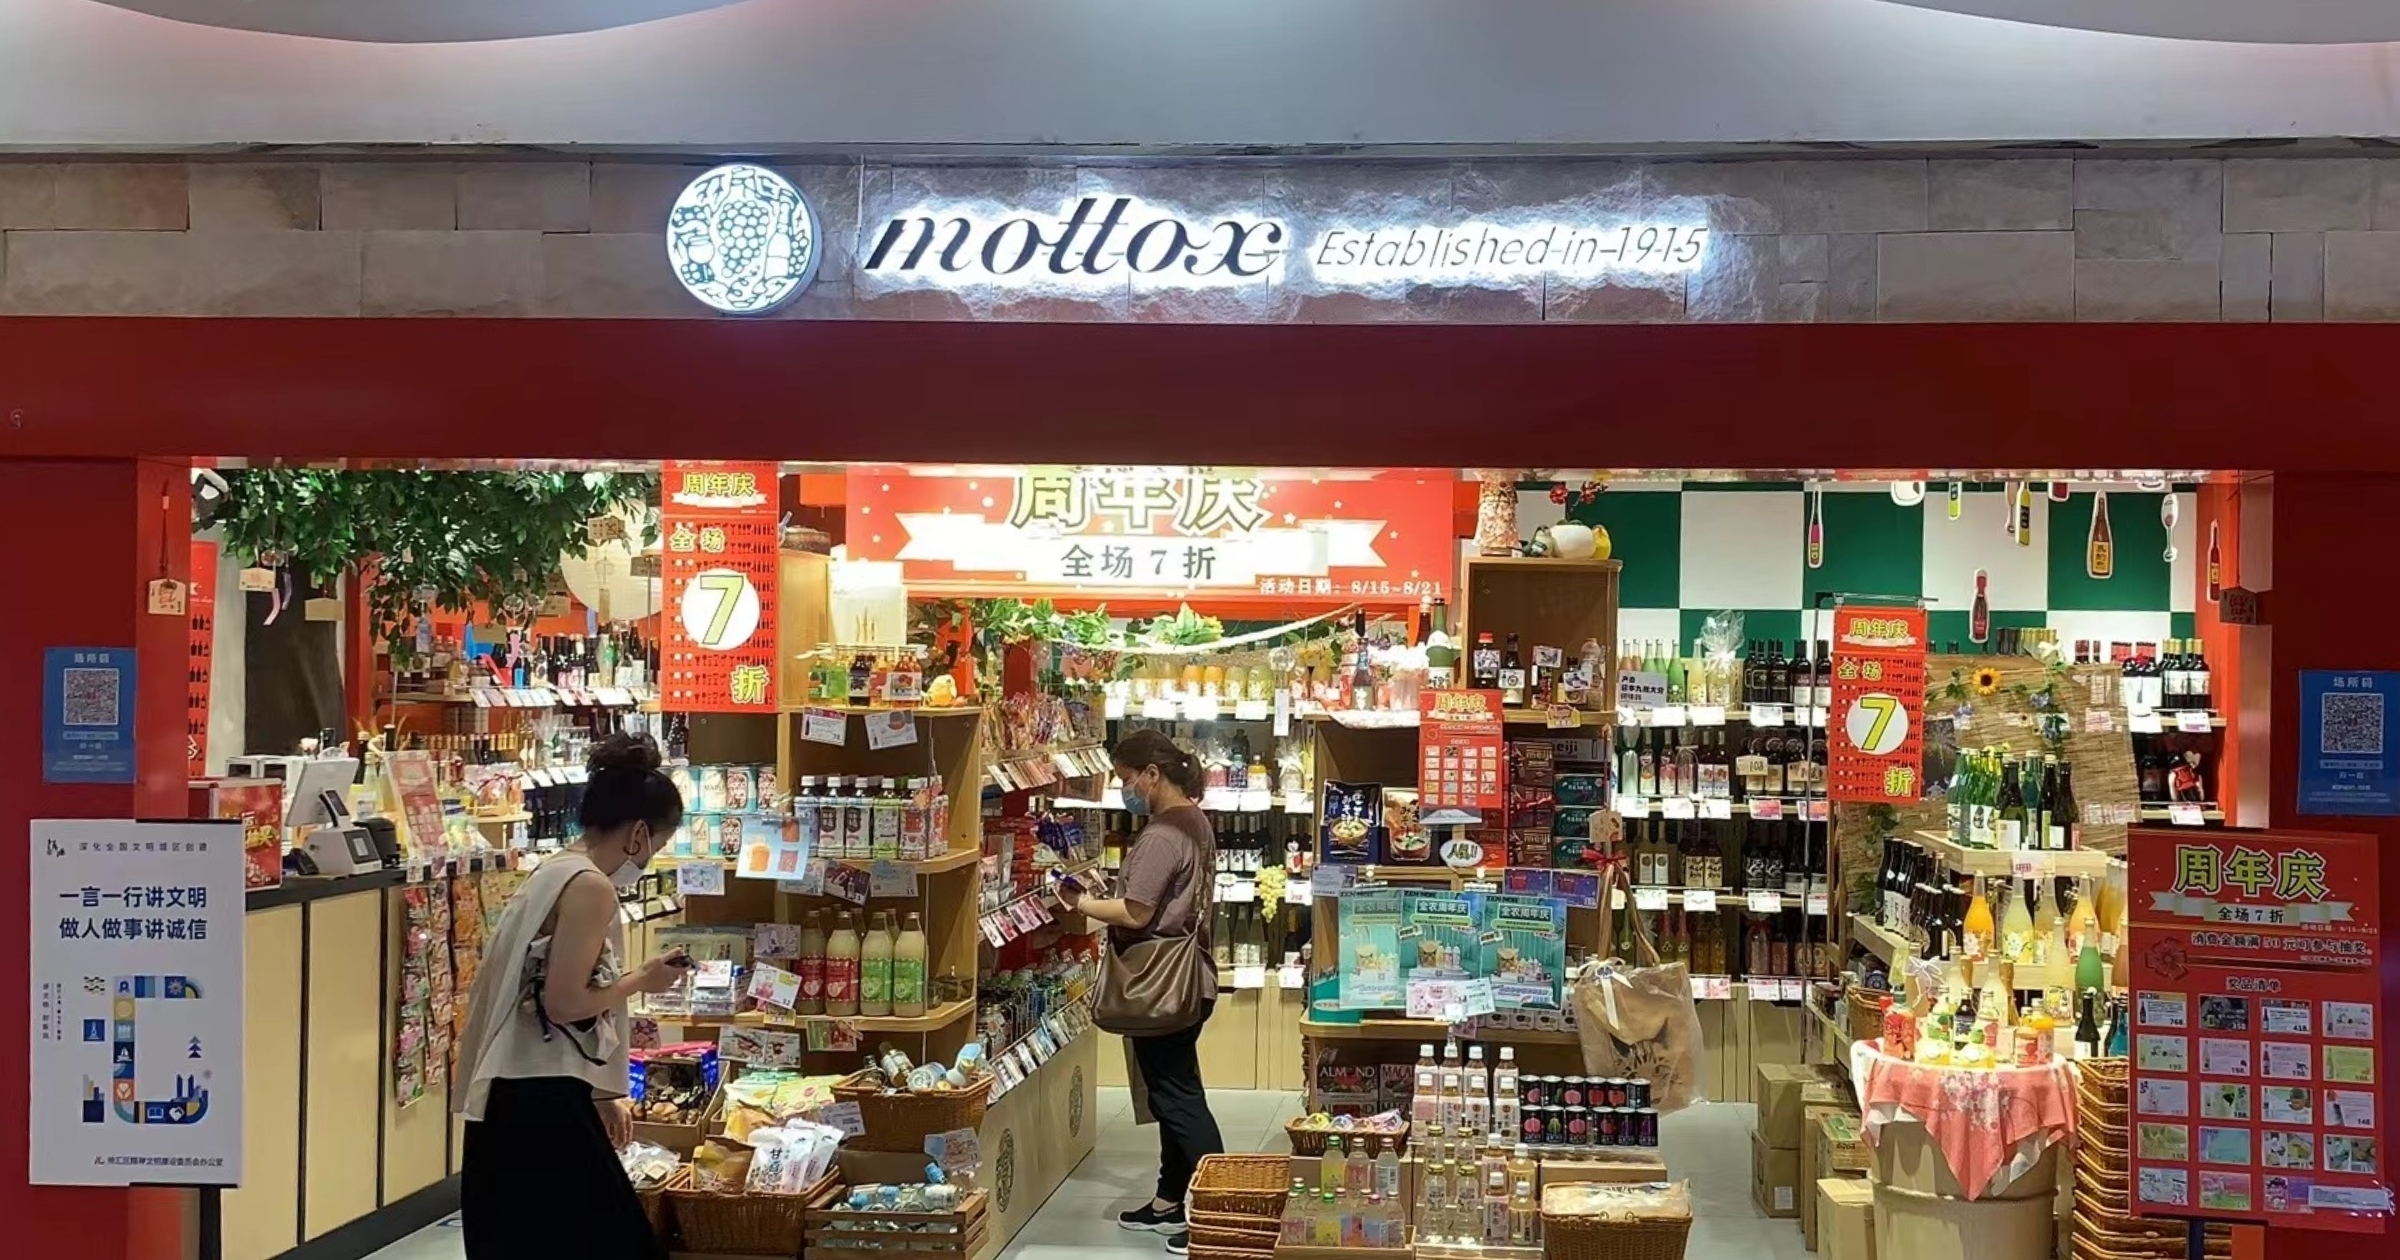 モトックス国外初の直営店  「mottox」中国・上海直営店が一周年を迎えました